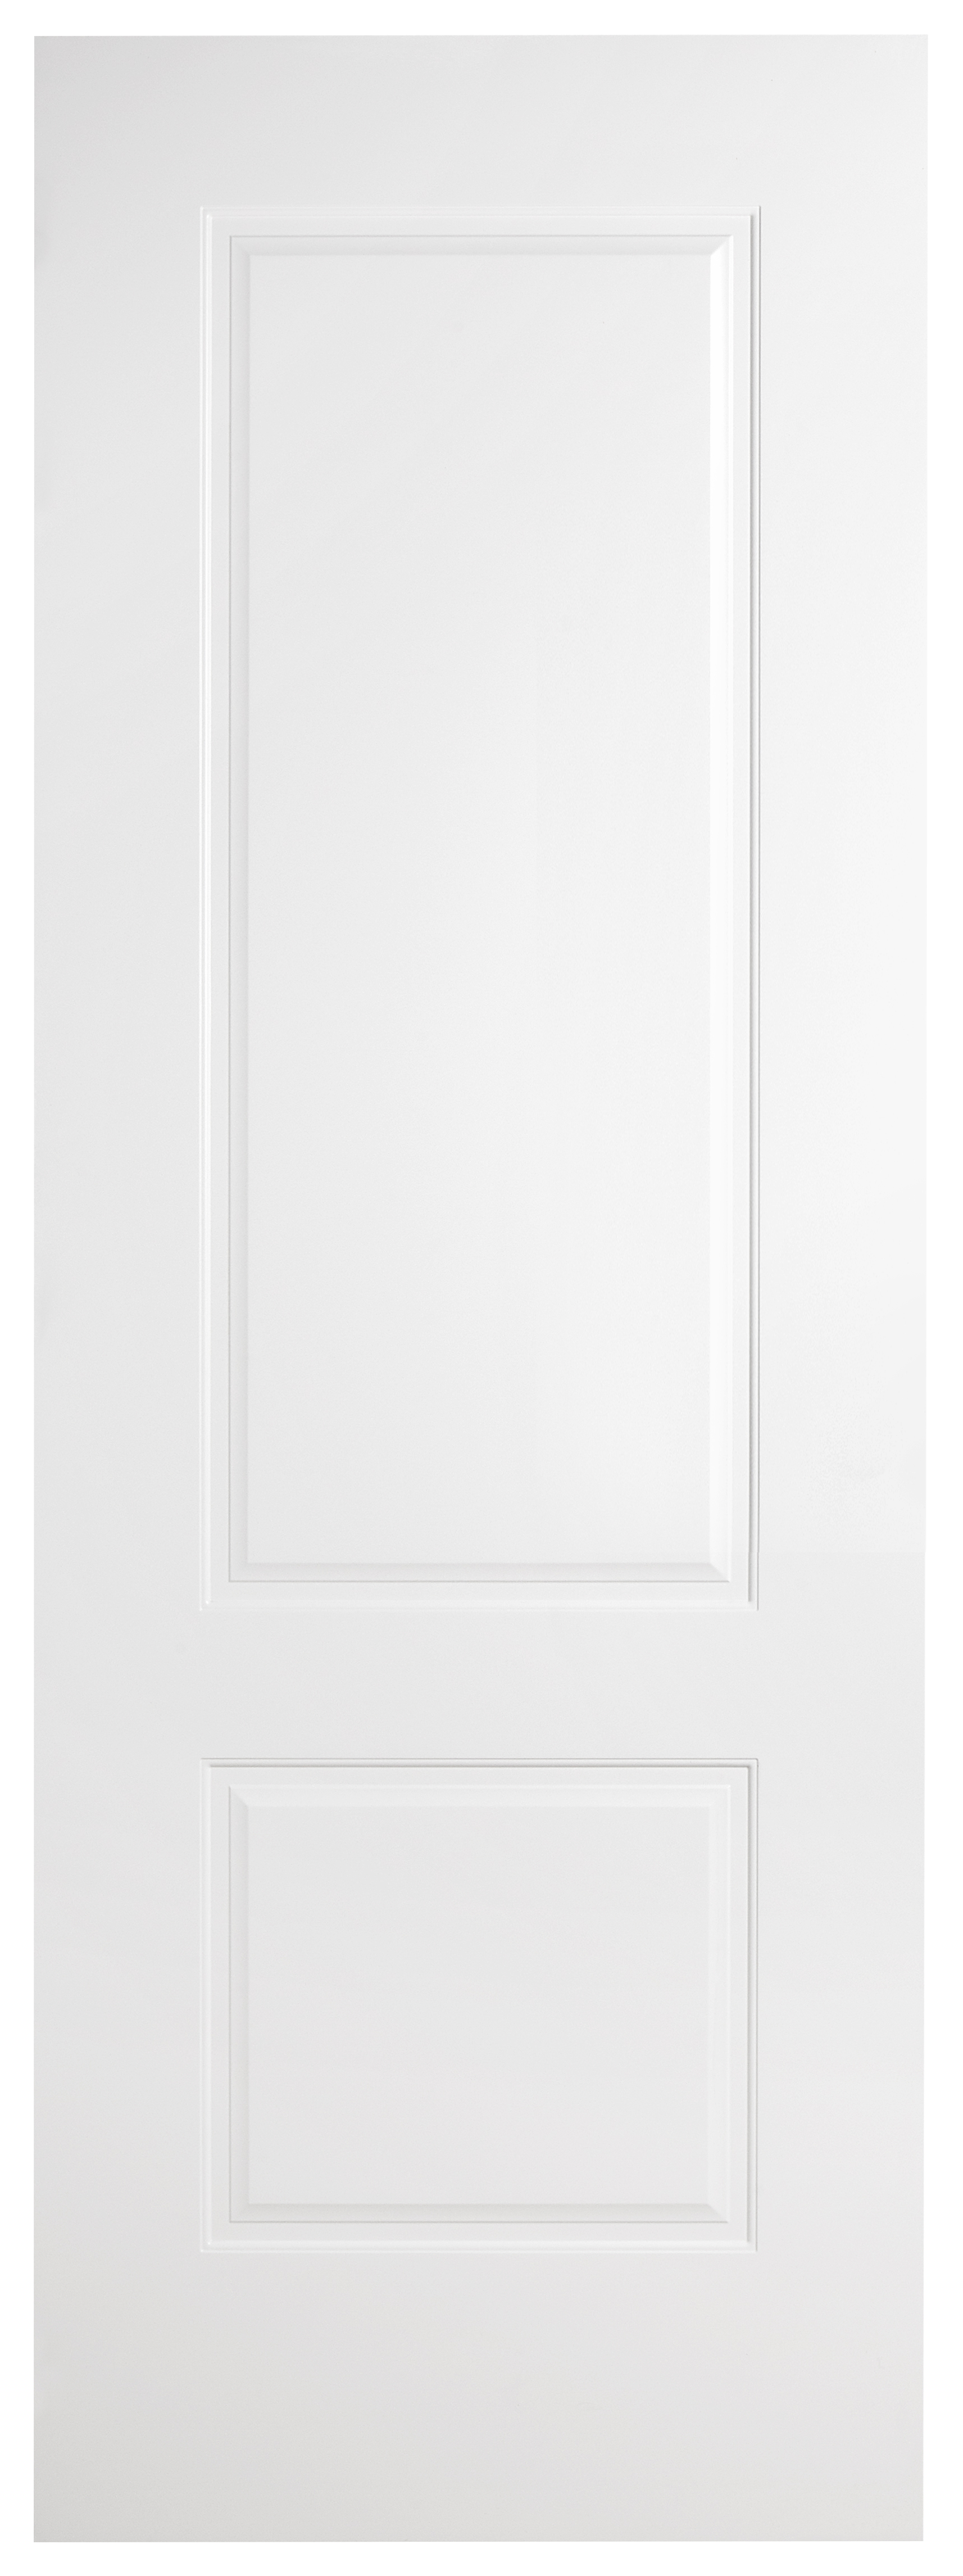 Puerta corredera marsella blanca de 72,5 cm